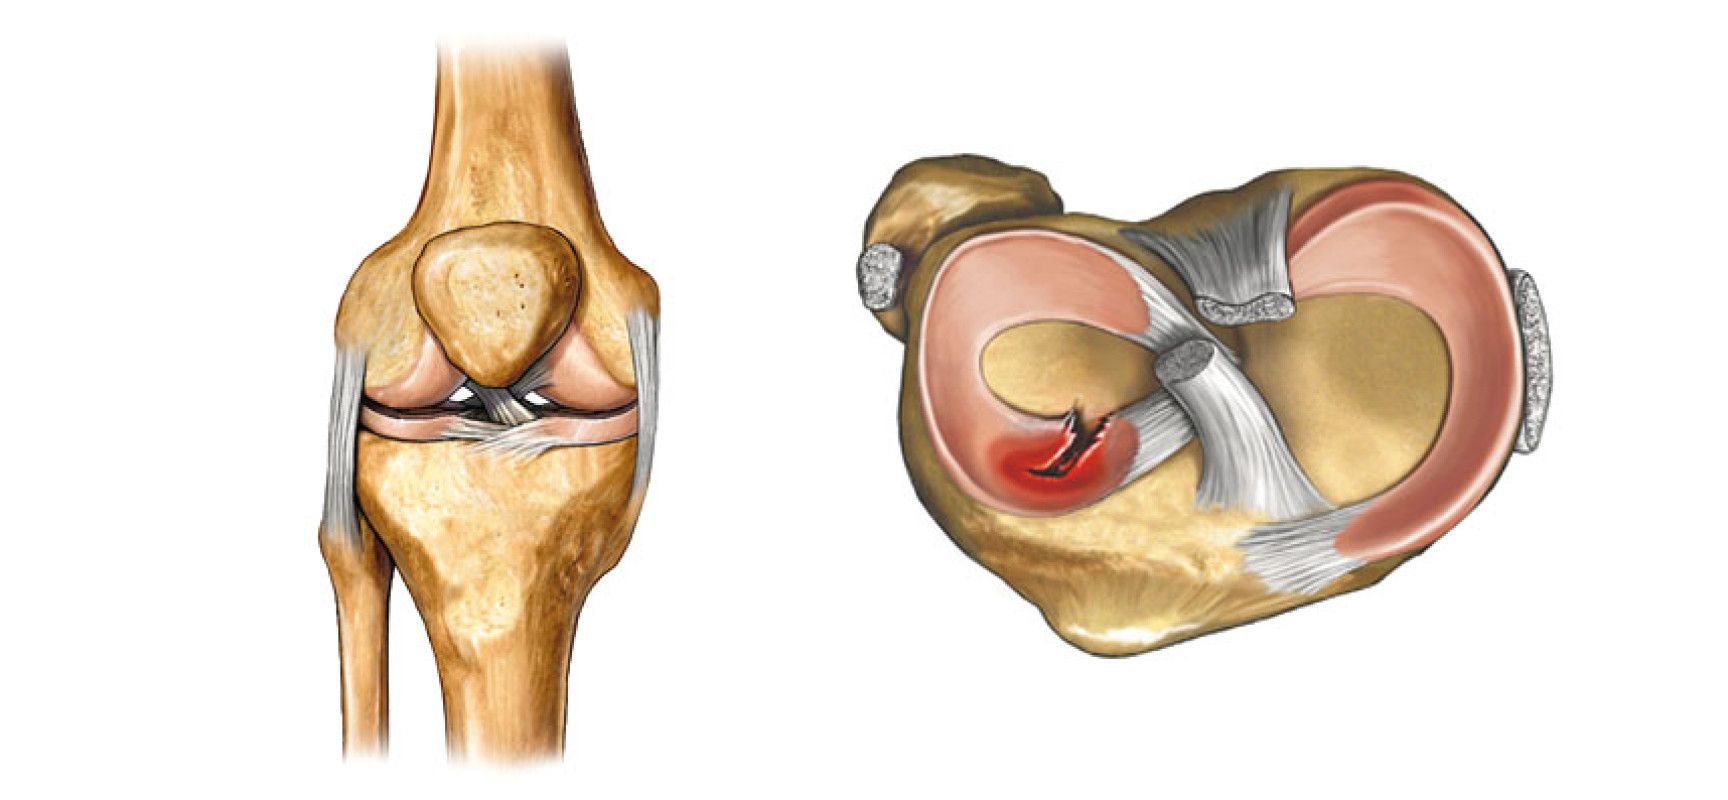 Повреждение мениска коленного сустава – виды лечения